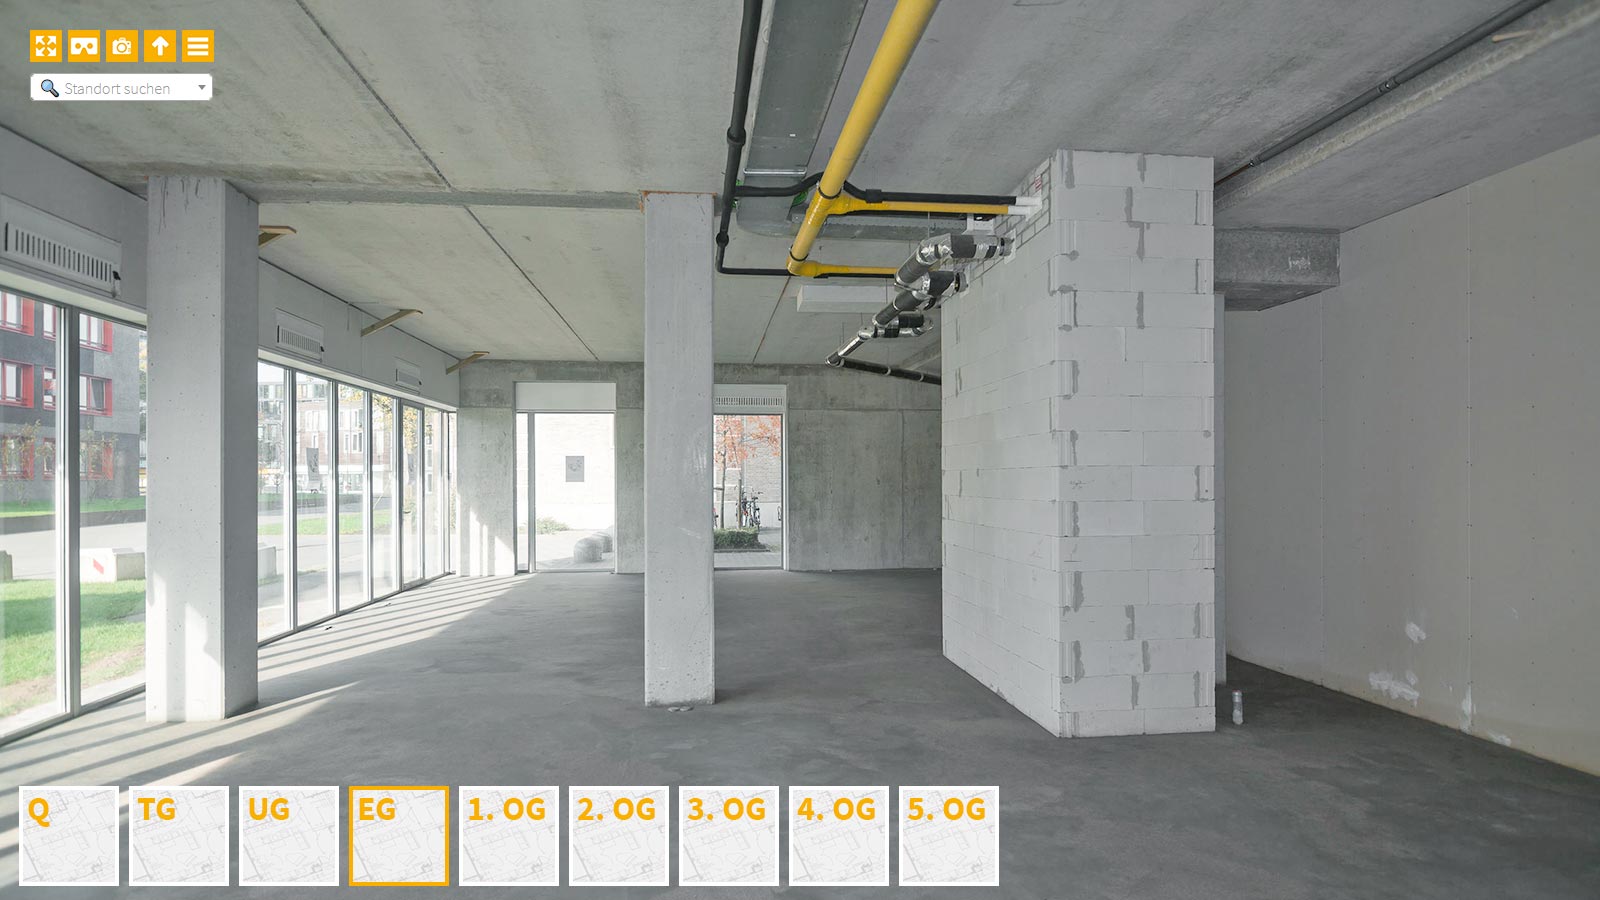 Baudokumentation 360 Grad bei gestörten Projekten in 


	


	


	


	


	


	


	


	


	


	Bochum









, Bilddokumentation als virtueller Rundgang